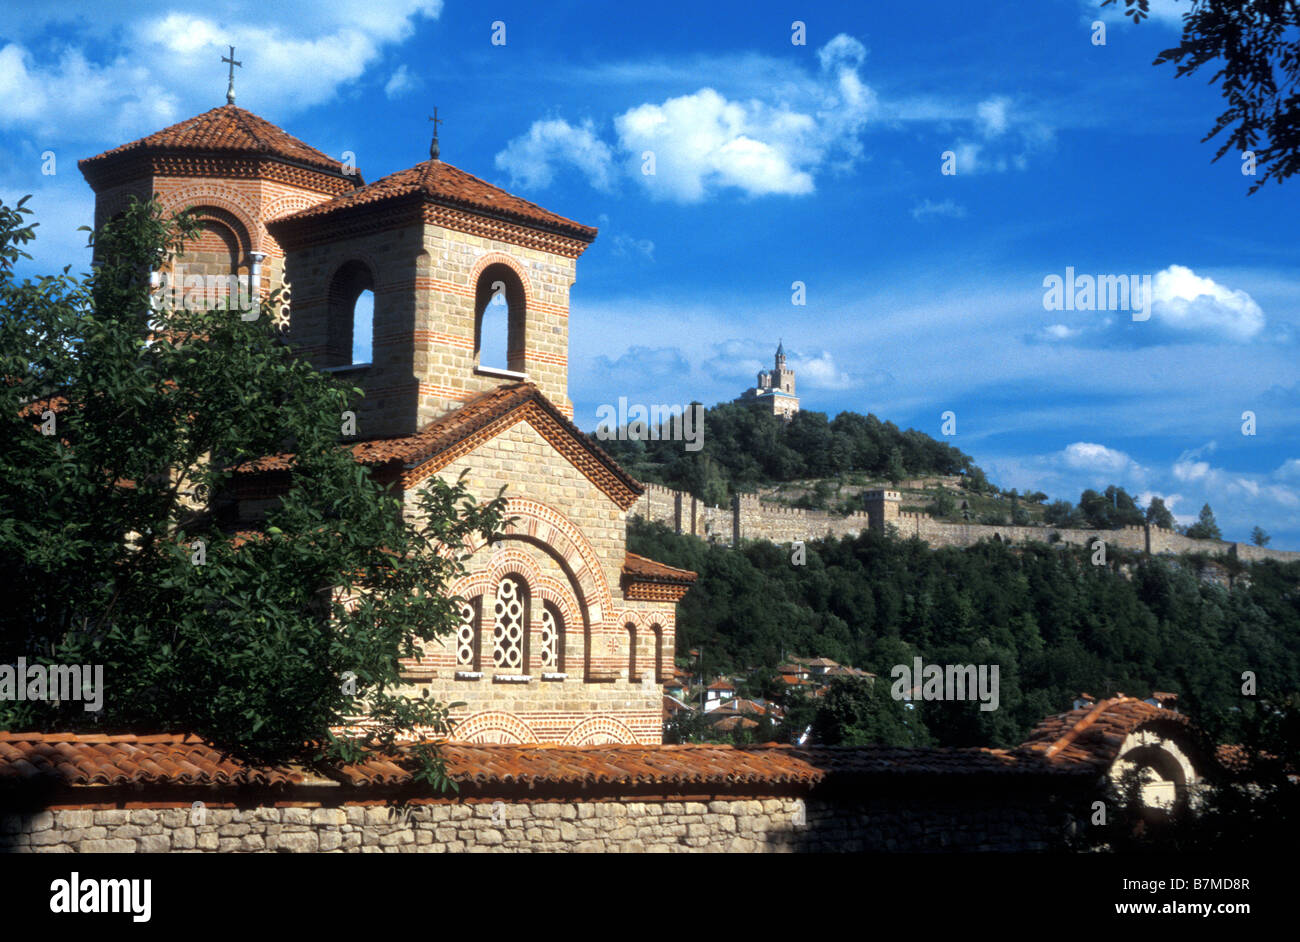 St. Dimitar von Saloniki und Annahme patriarchalischen Kirche Bulgarien Stockfoto